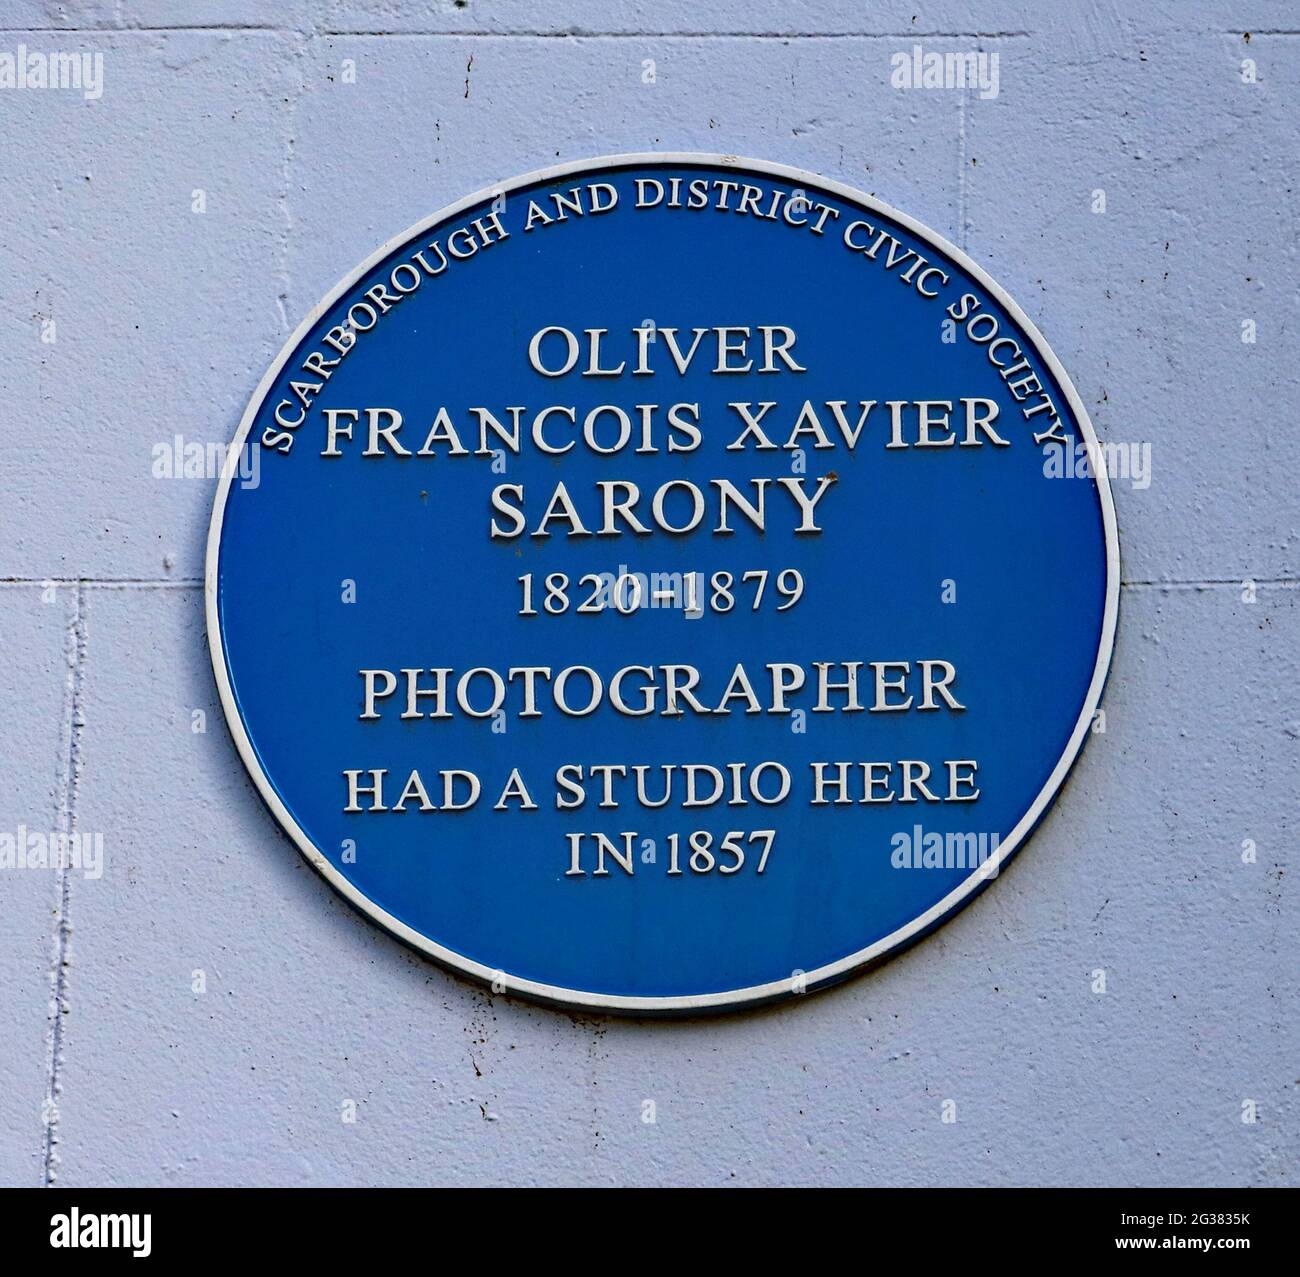 Plaque bleue pour Oliver François Xavier Sarony à Fairview court Scarborough, où le photographe avait un studio dans les années 1800. Banque D'Images